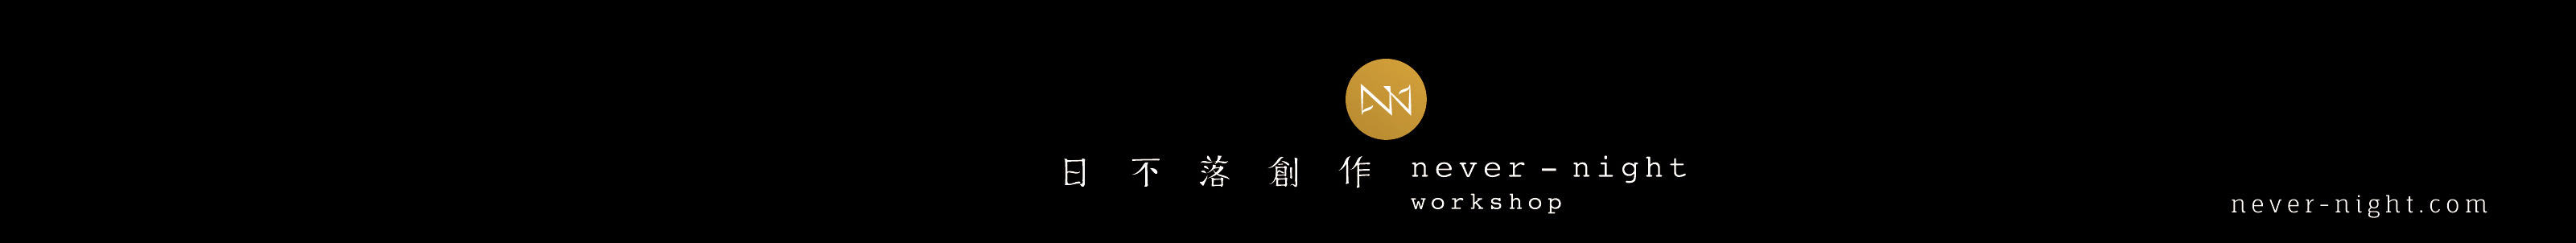 Nick Ng's profile banner